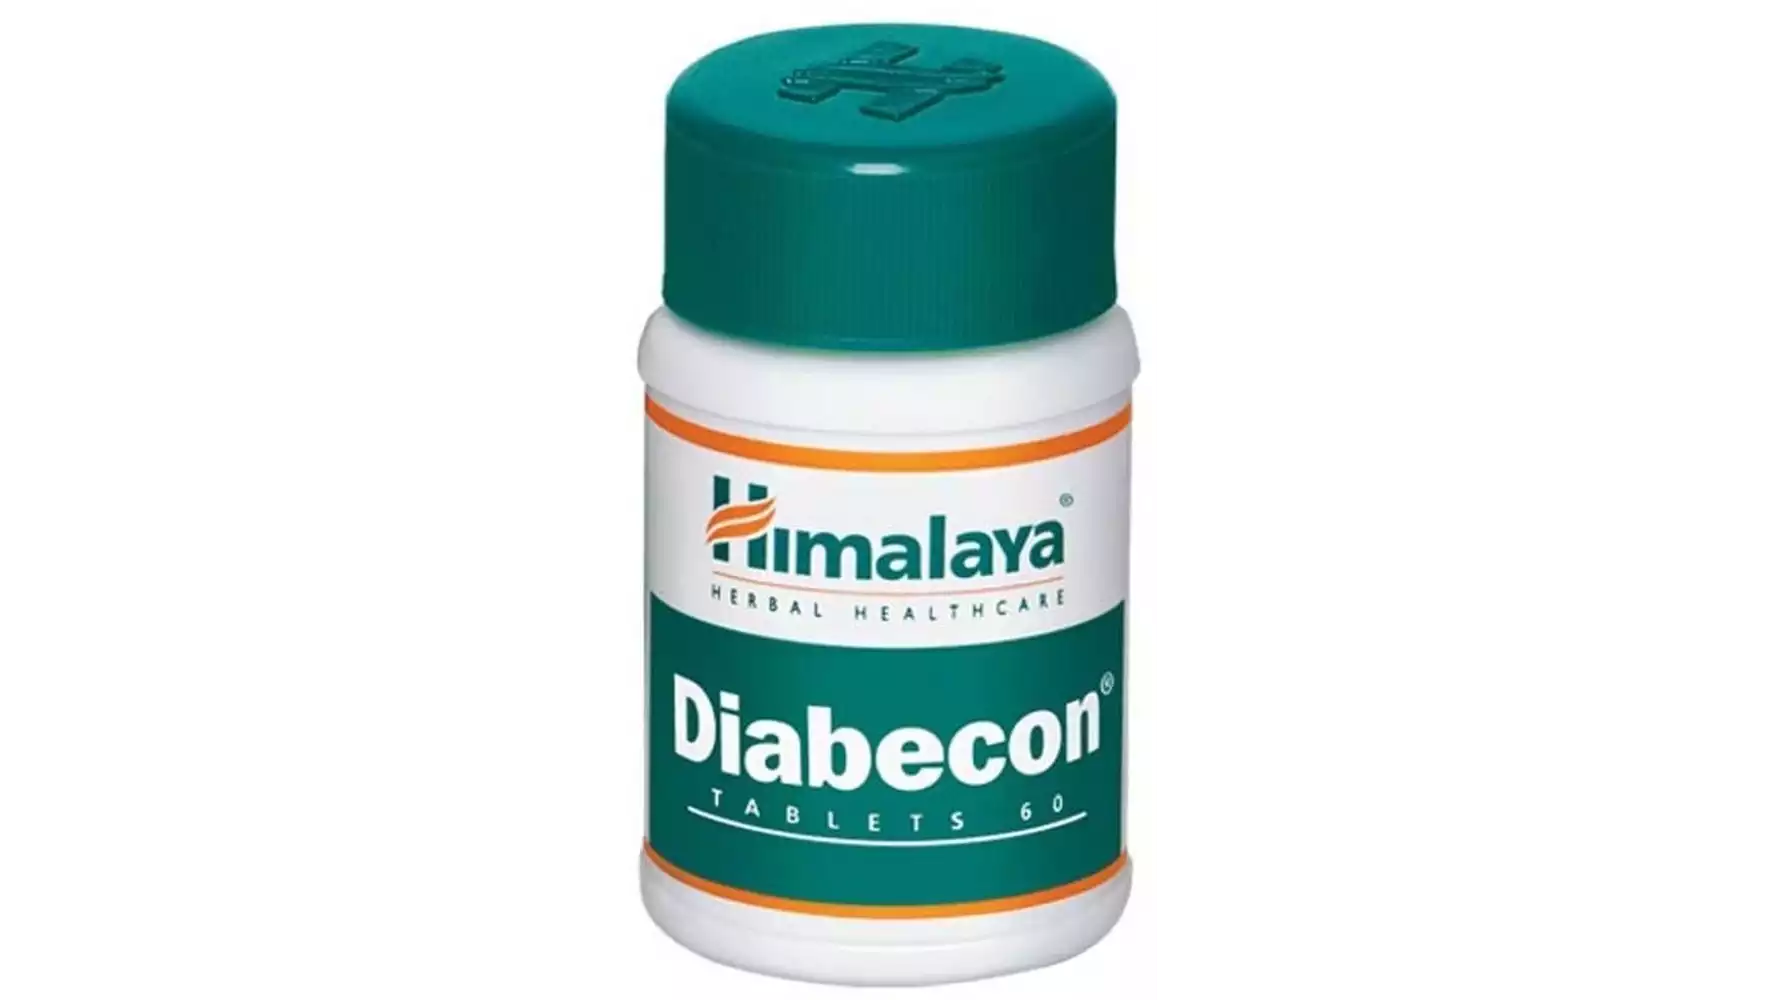 Himalaya Diabecon Tablet (60tab)